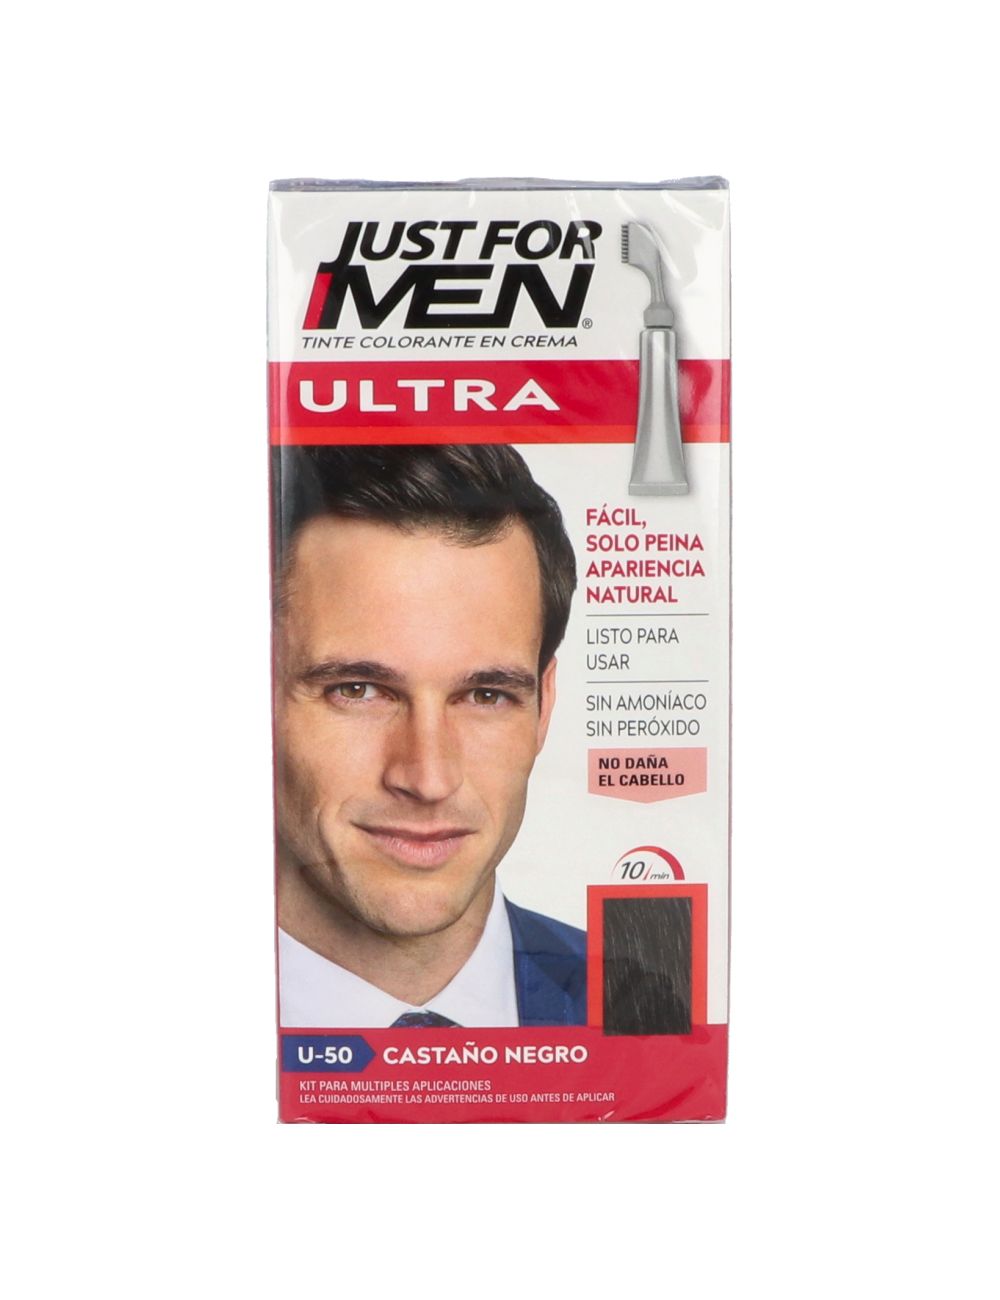 Just For Men Ultra Tinte Colorante Castaño Negro